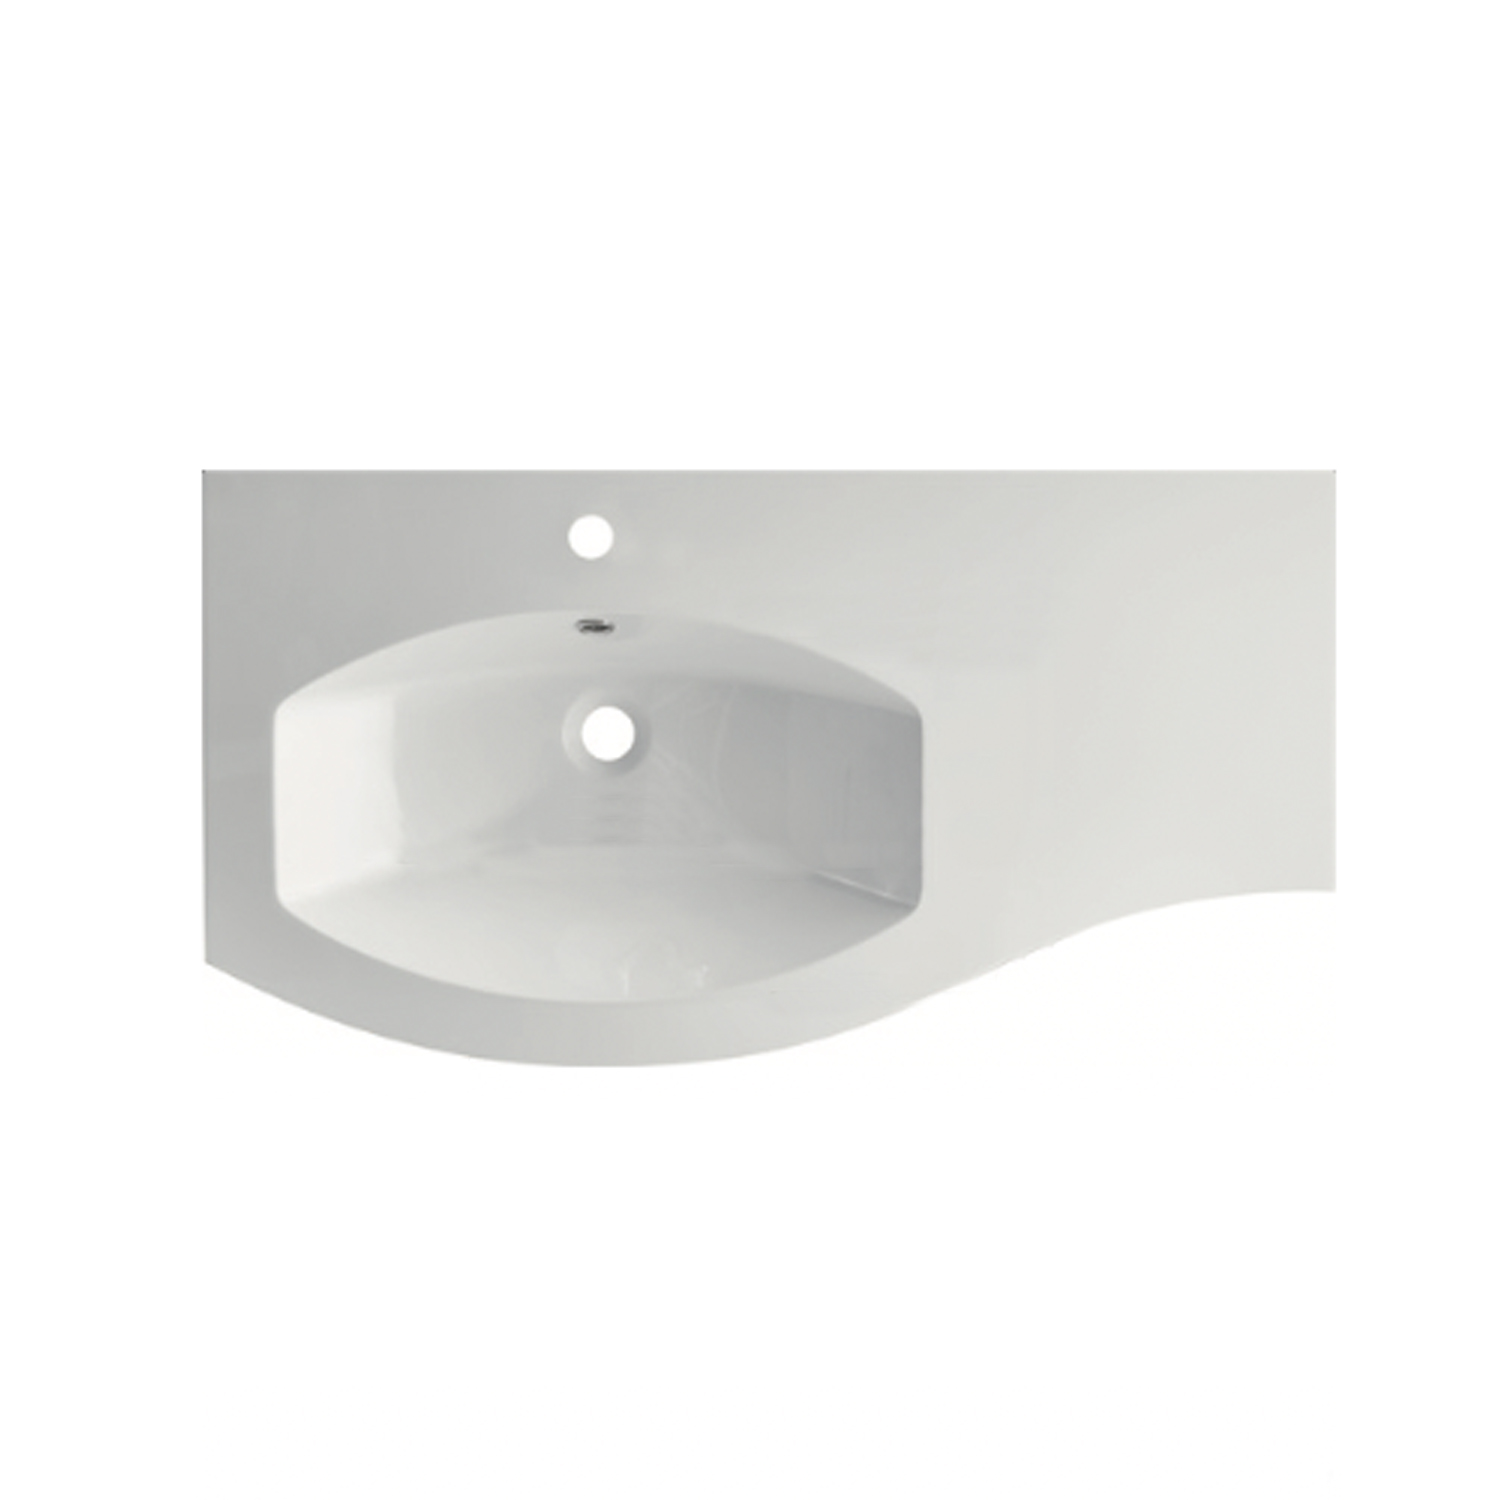 Lavabo - Thin-Rim Design Over The Counter Wash Basin